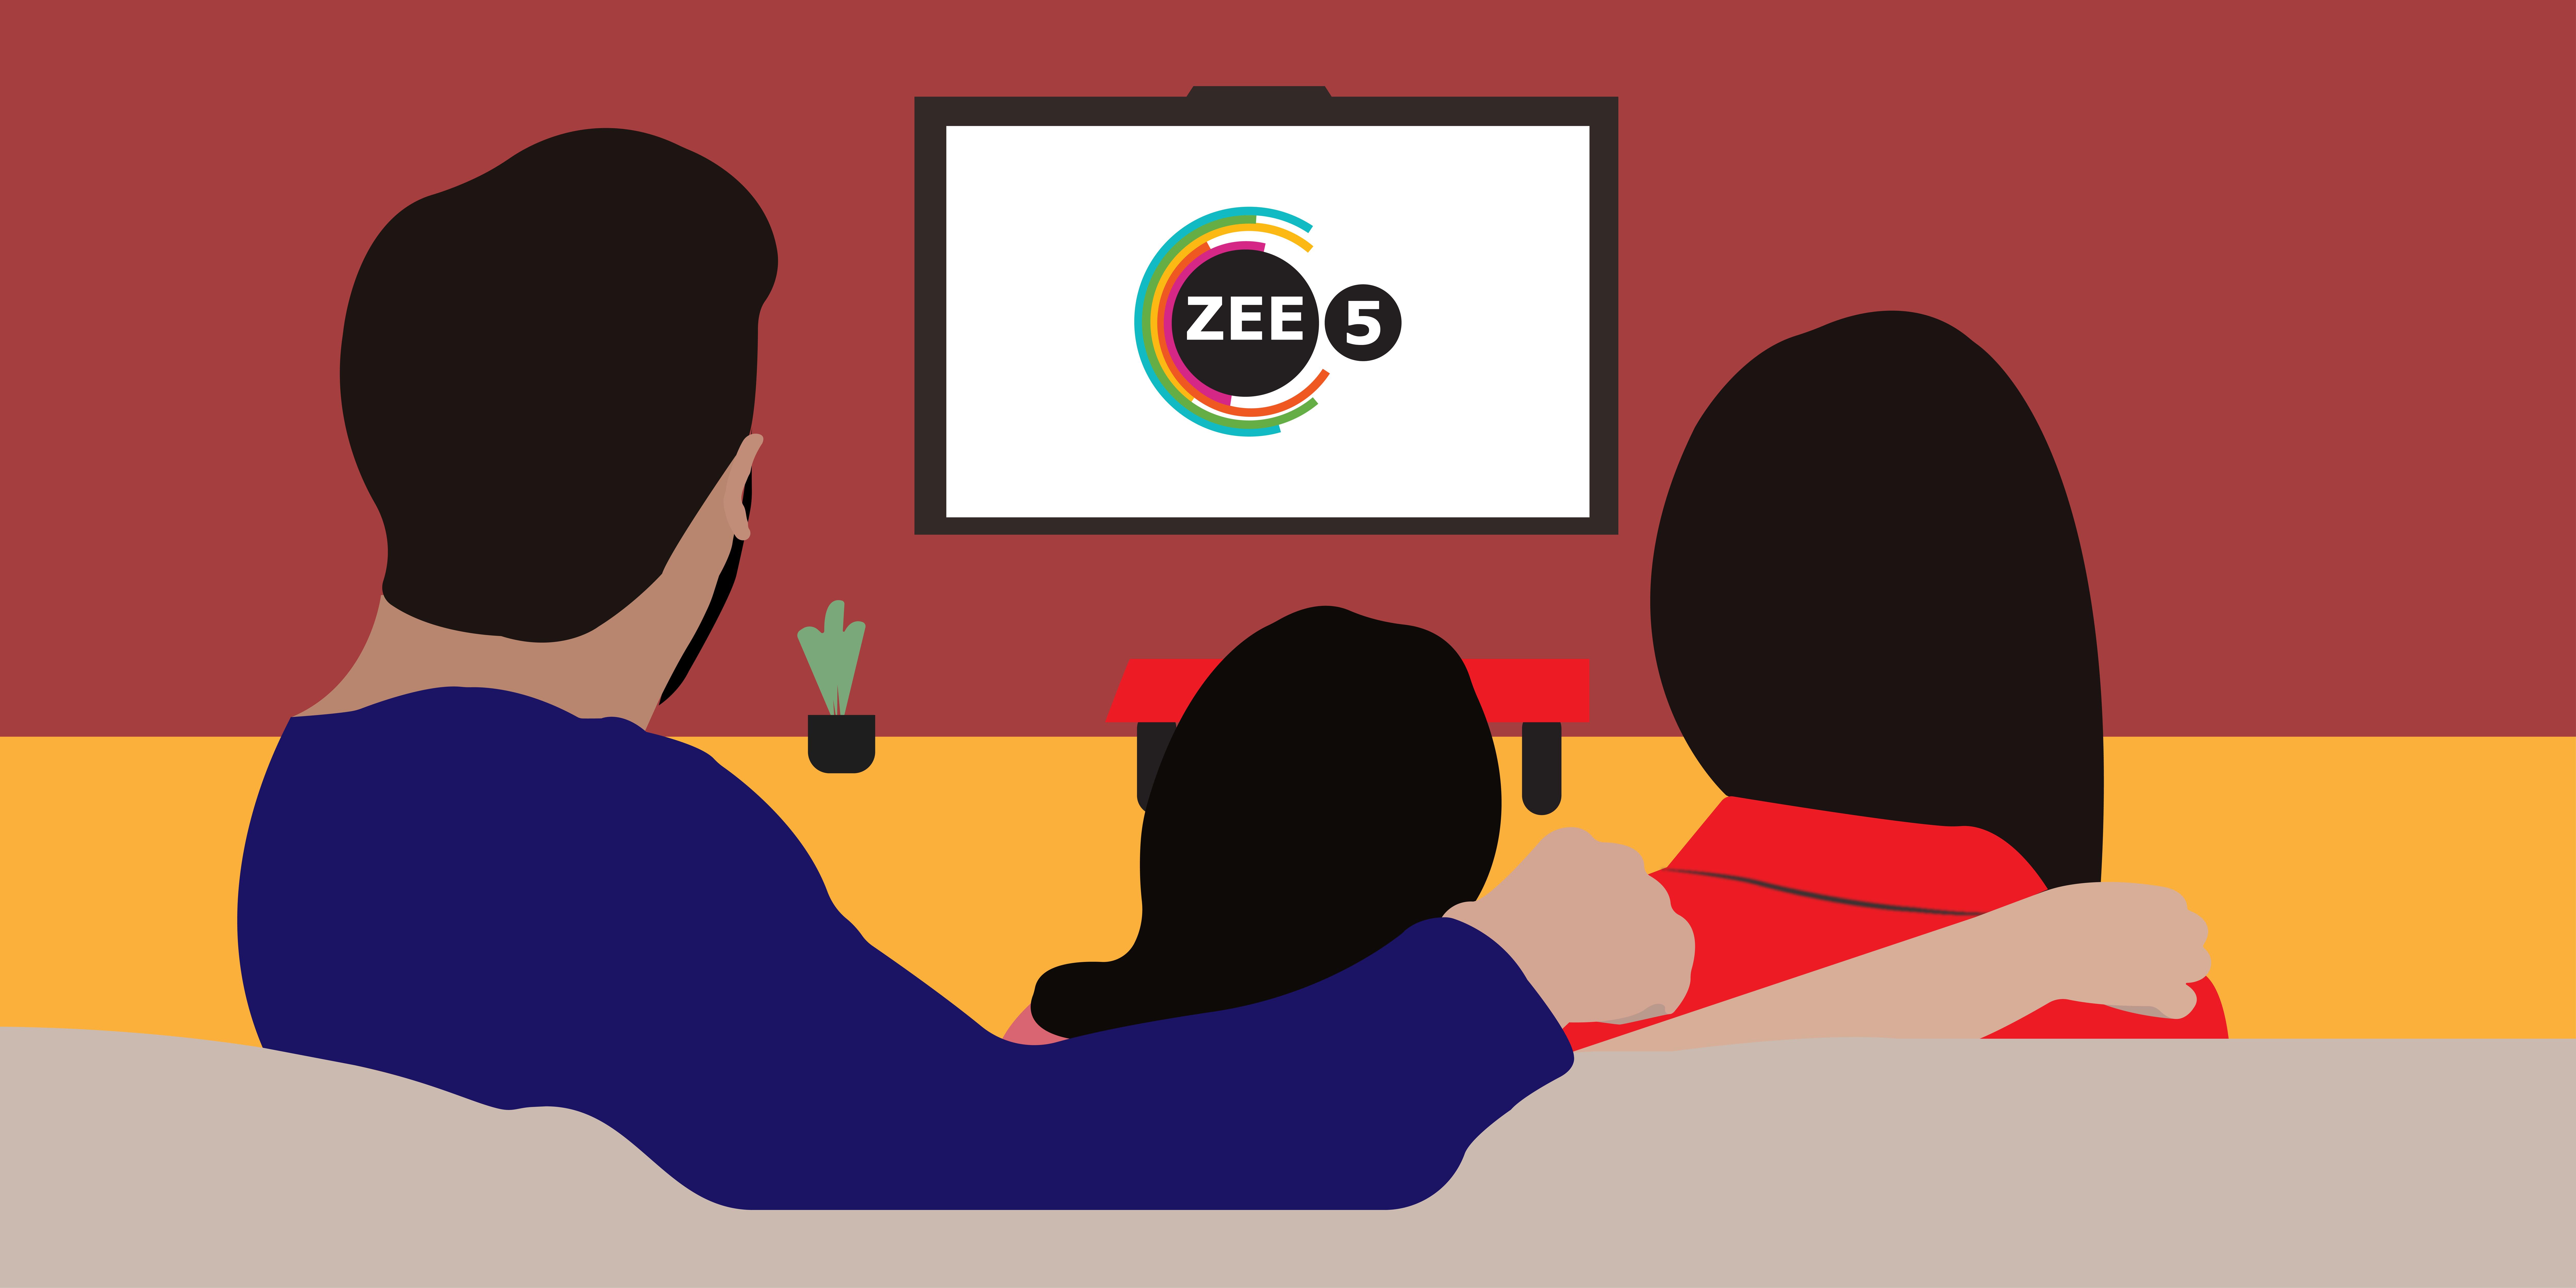 zee5-logo-illustration